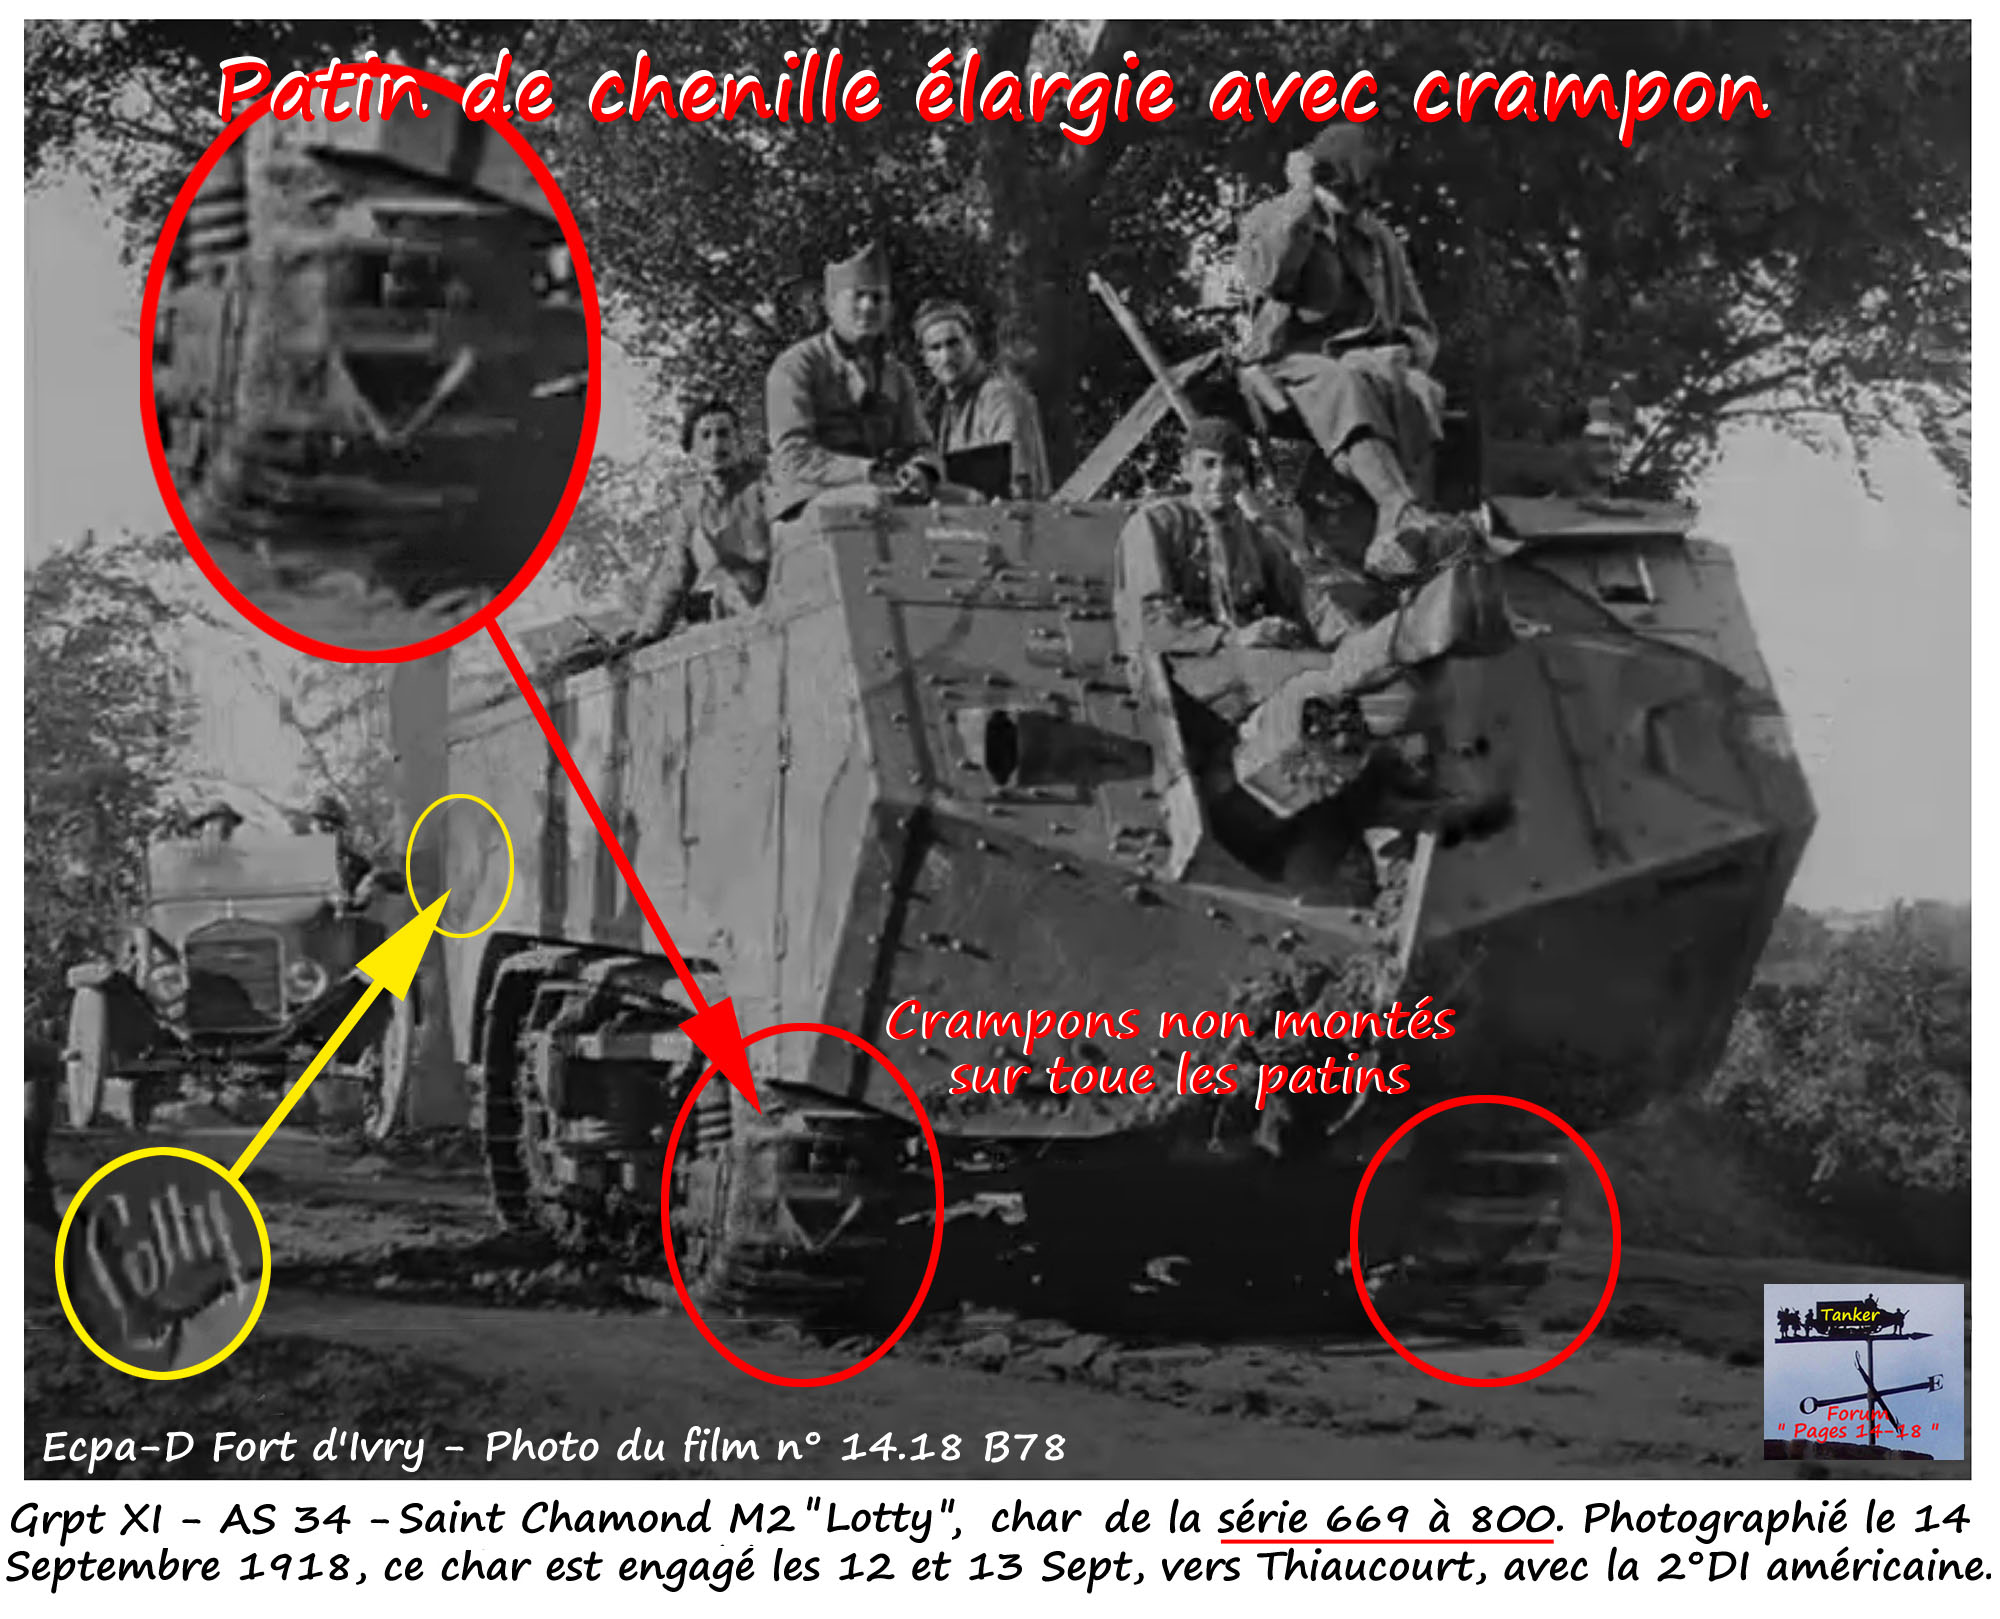 40 - Grpt XI - AS 34 - St Chamond M2 Asxxx n° 62xxx Lotty.jpg